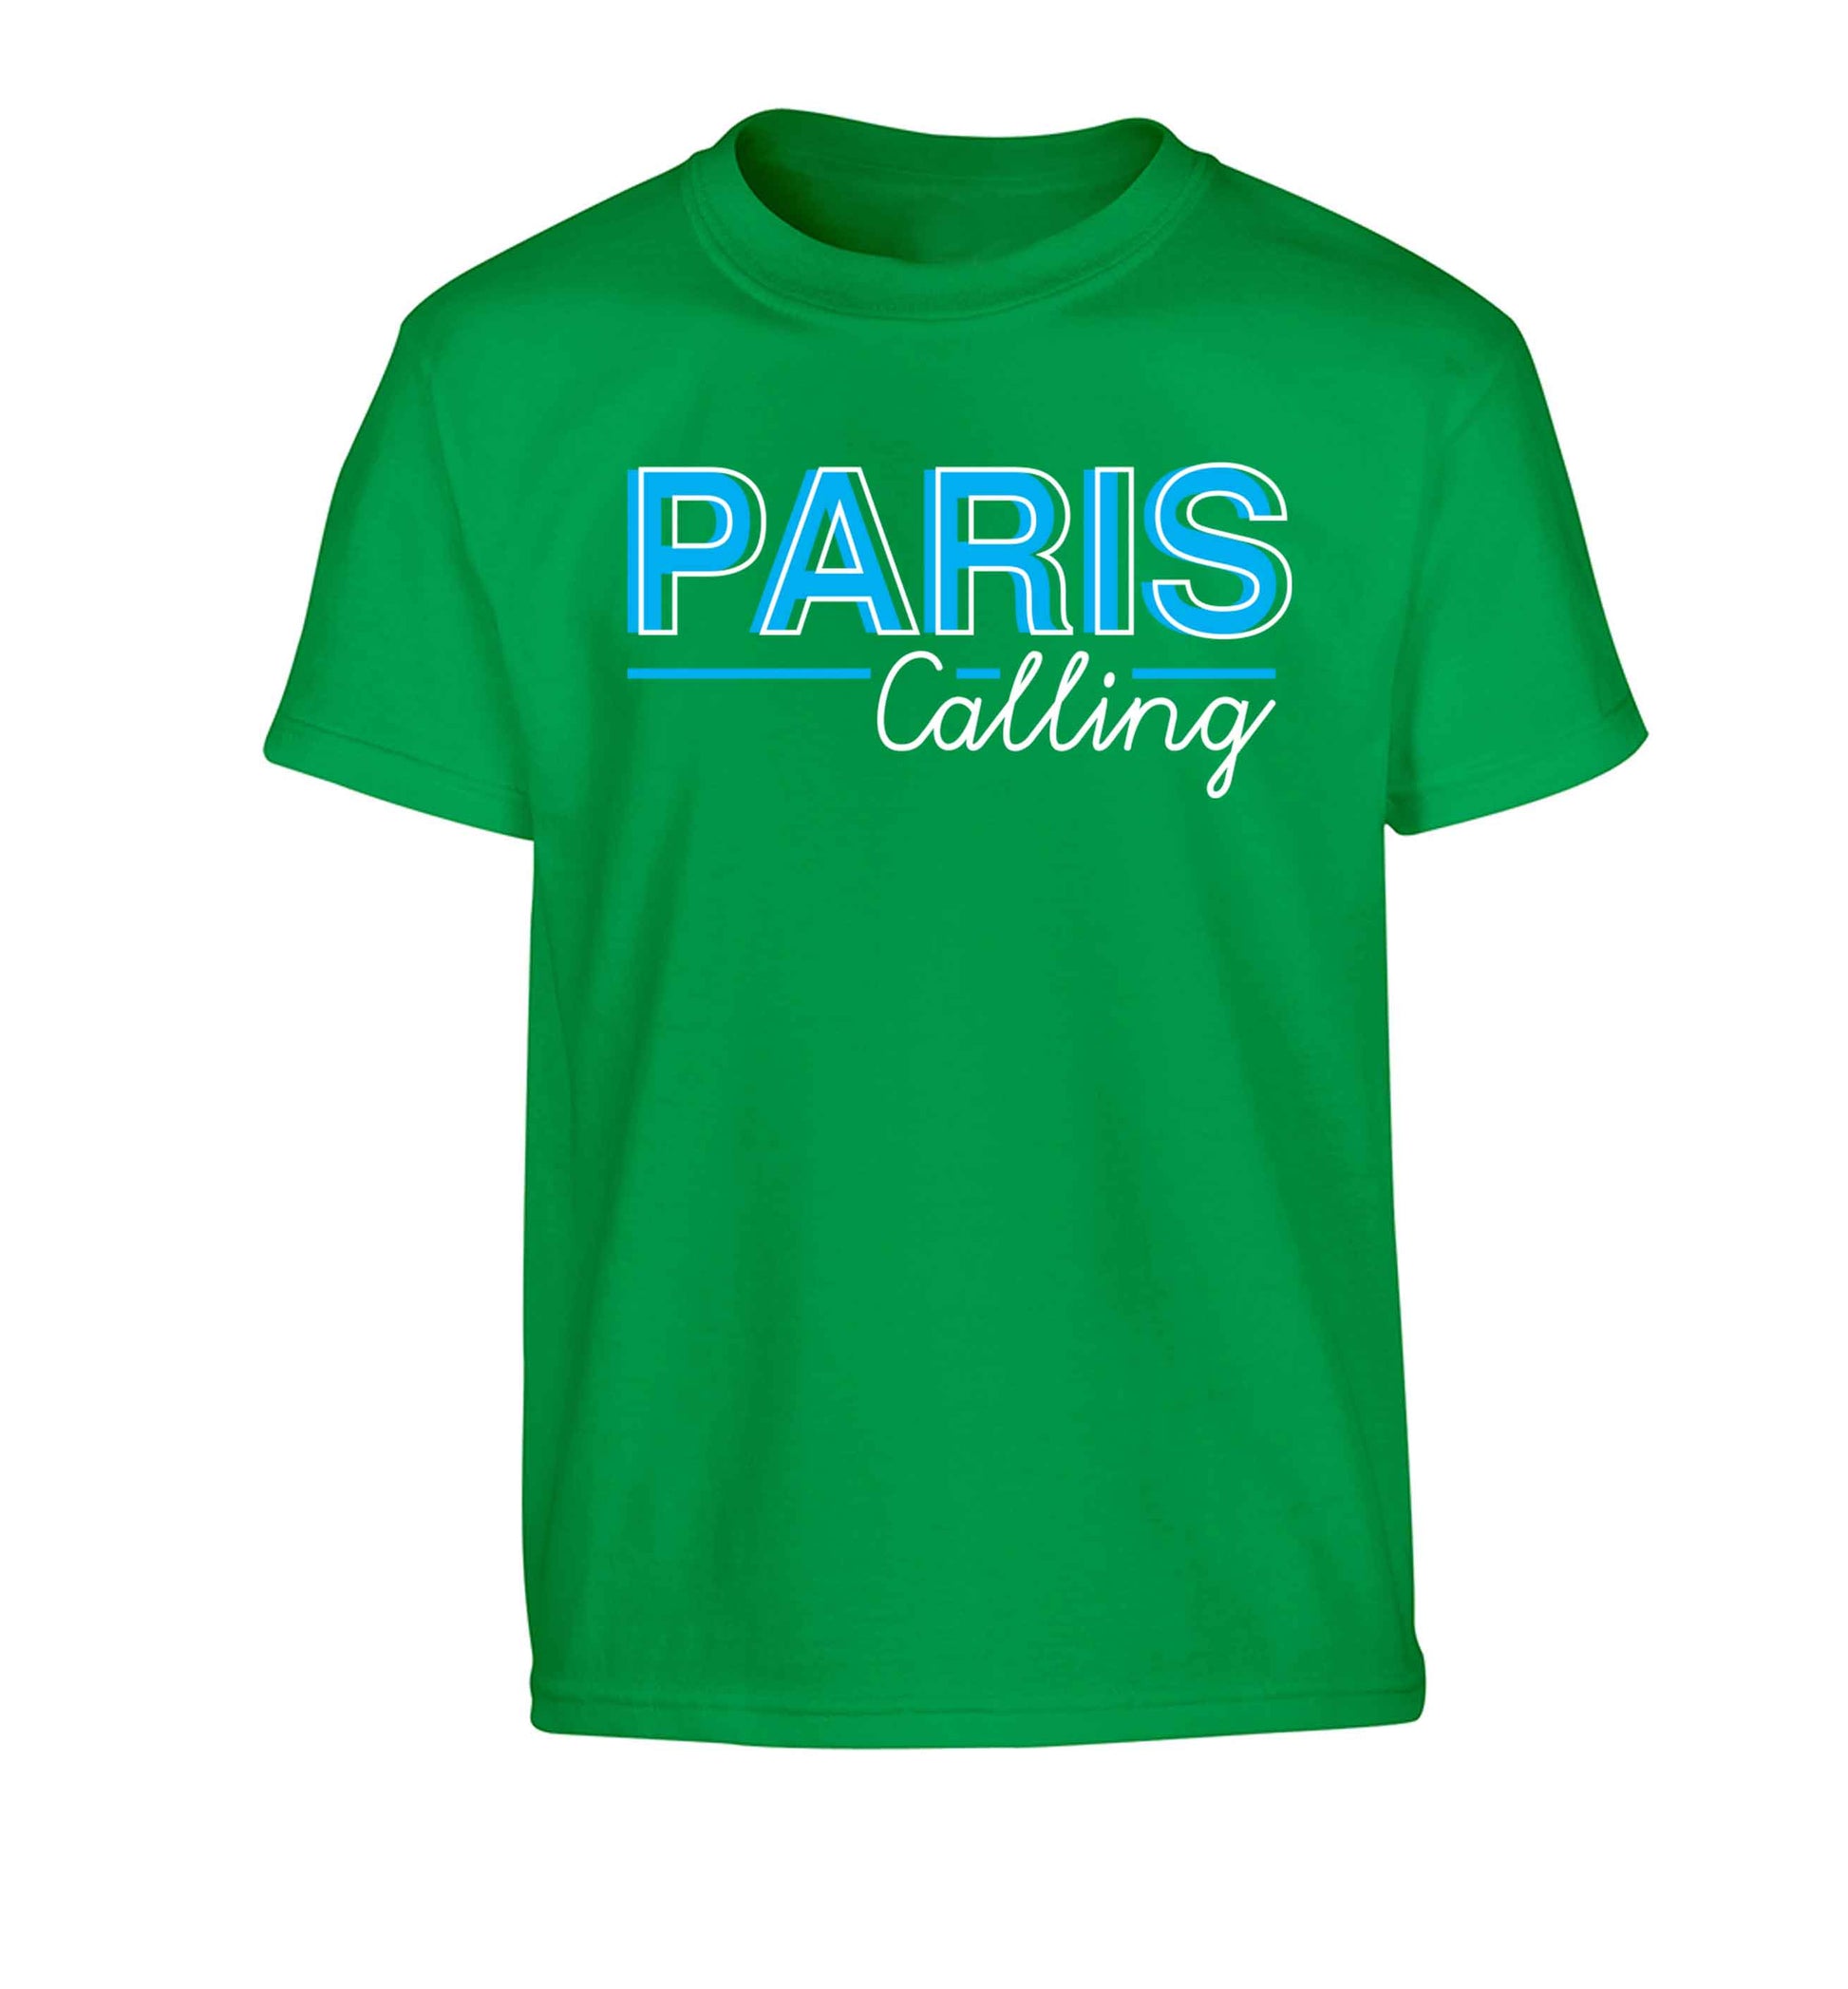 Paris calling Children's green Tshirt 12-13 Years